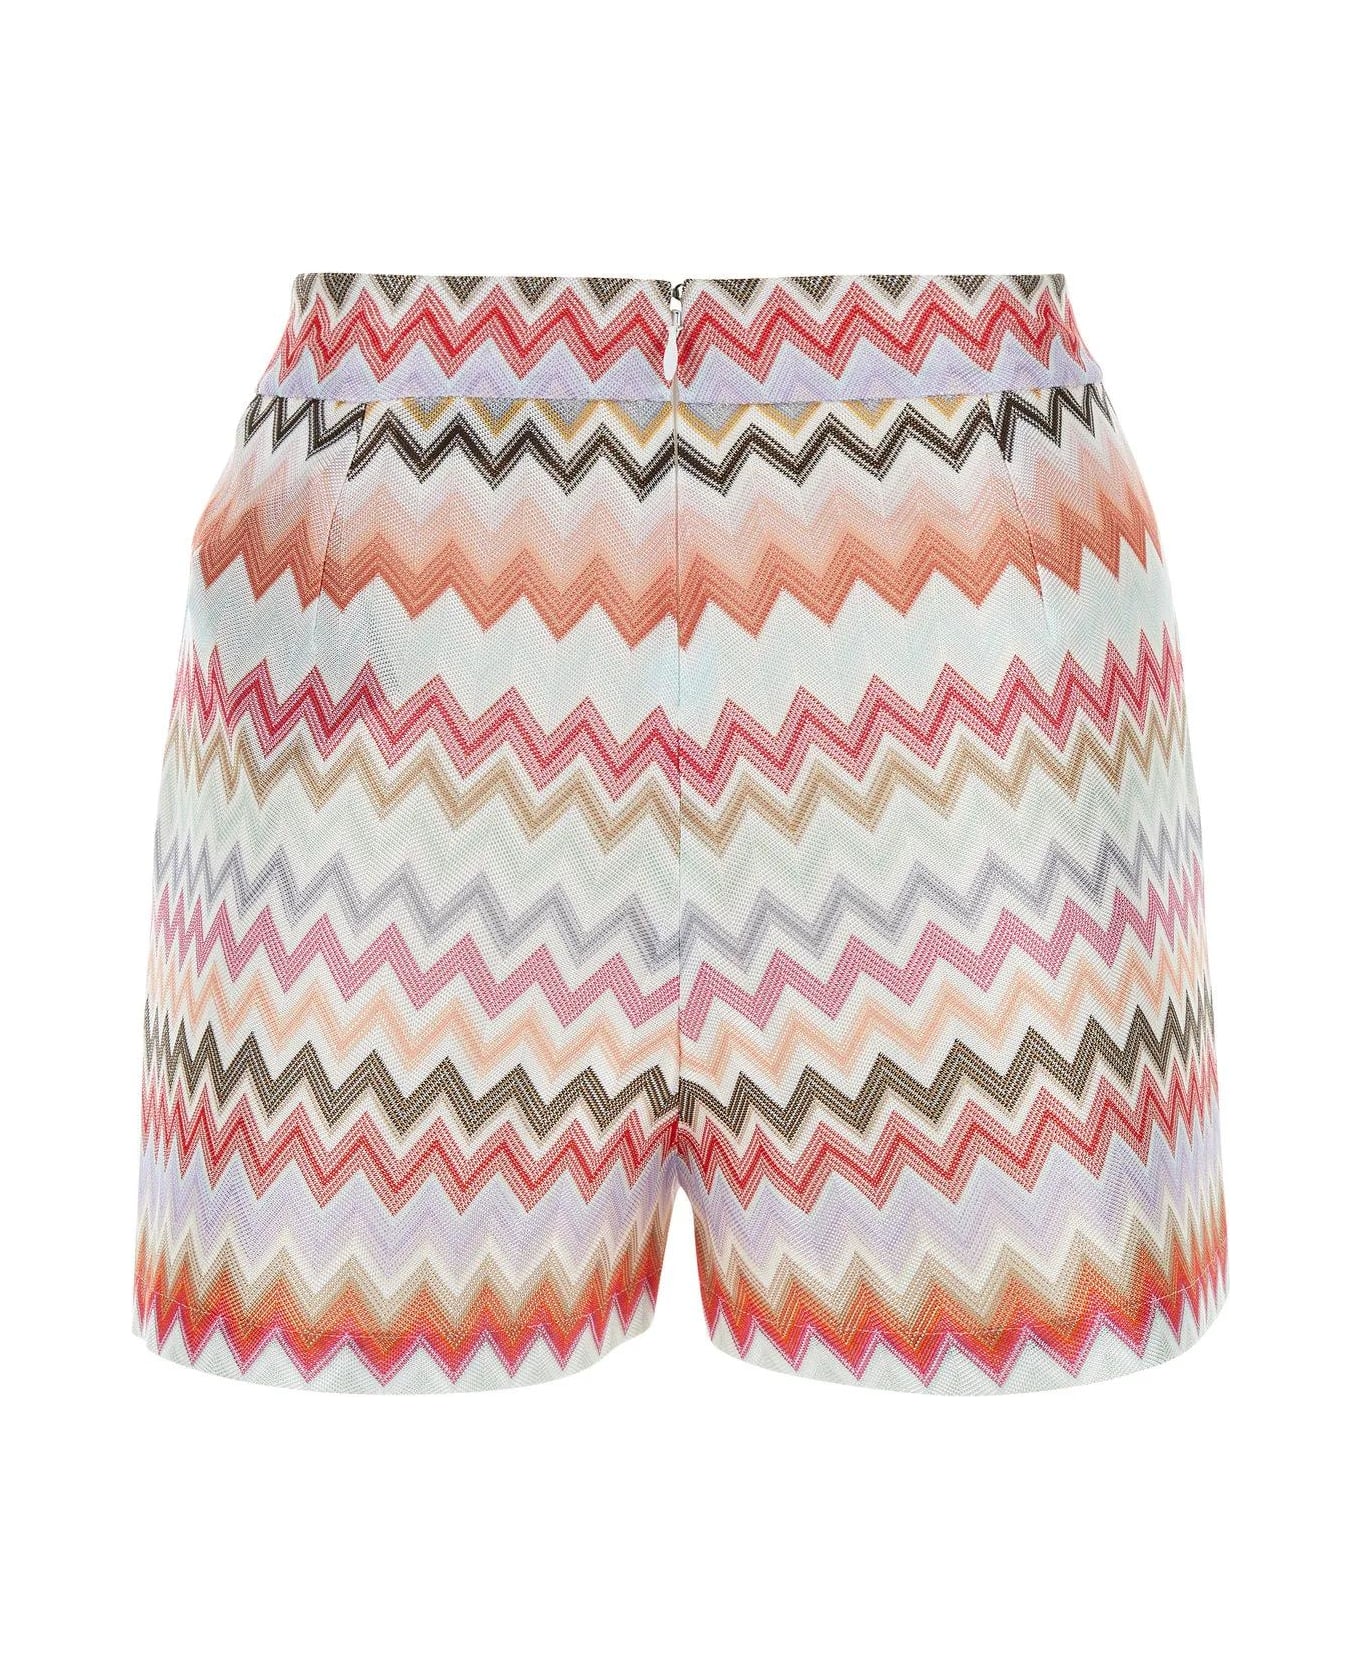 Missoni Embroidered Cotton Blend Shorts - Multicolore ショートパンツ